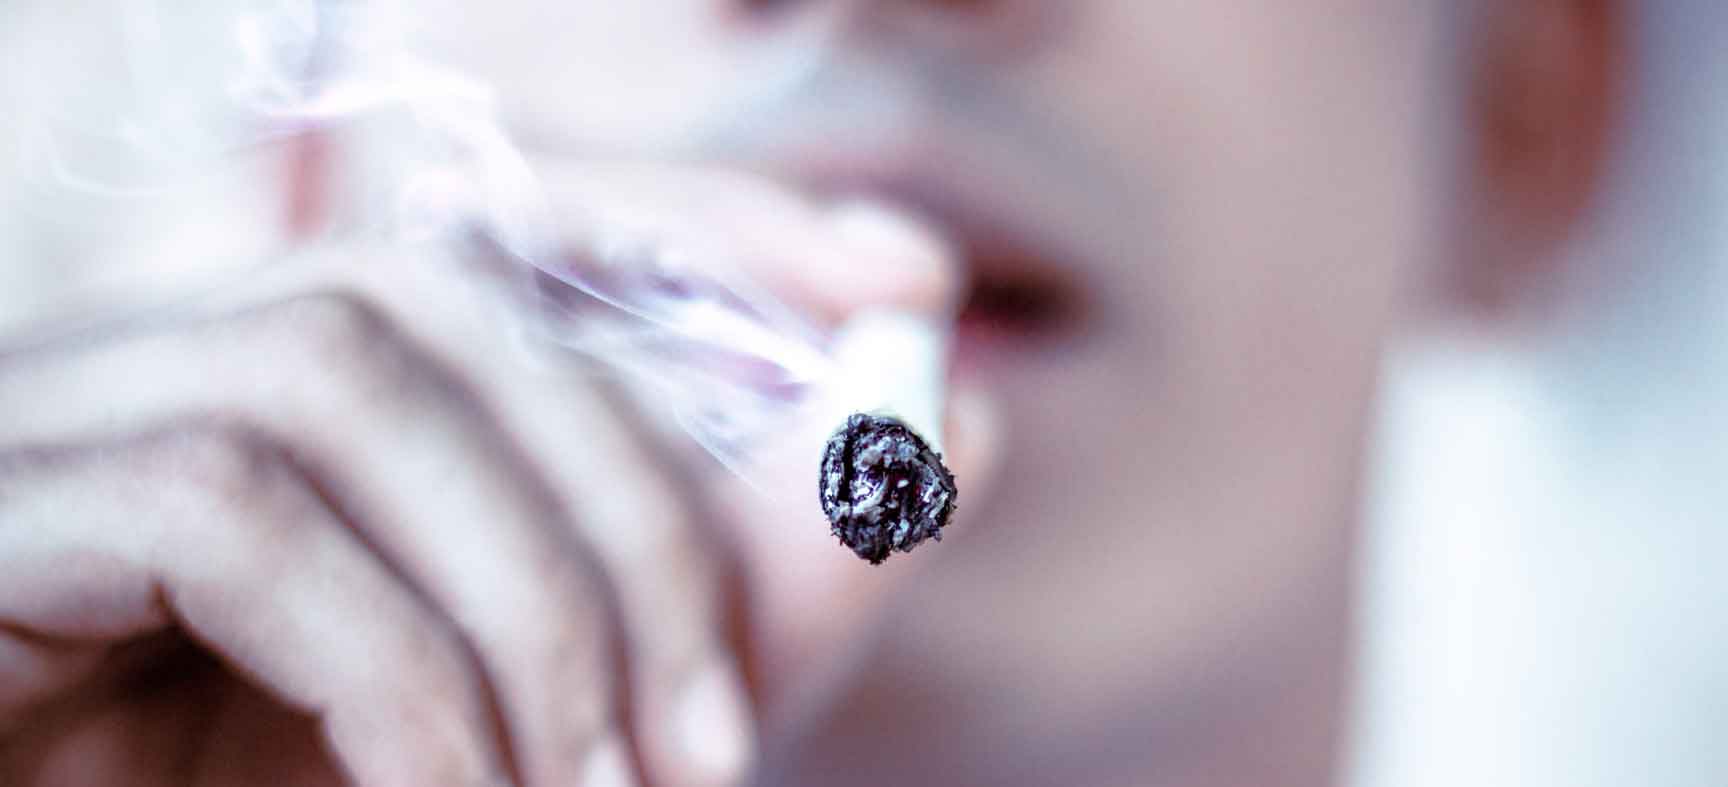 La Nicotine, accusée de rendre accro les fumeurs. Et si ce n'était pas Elle?